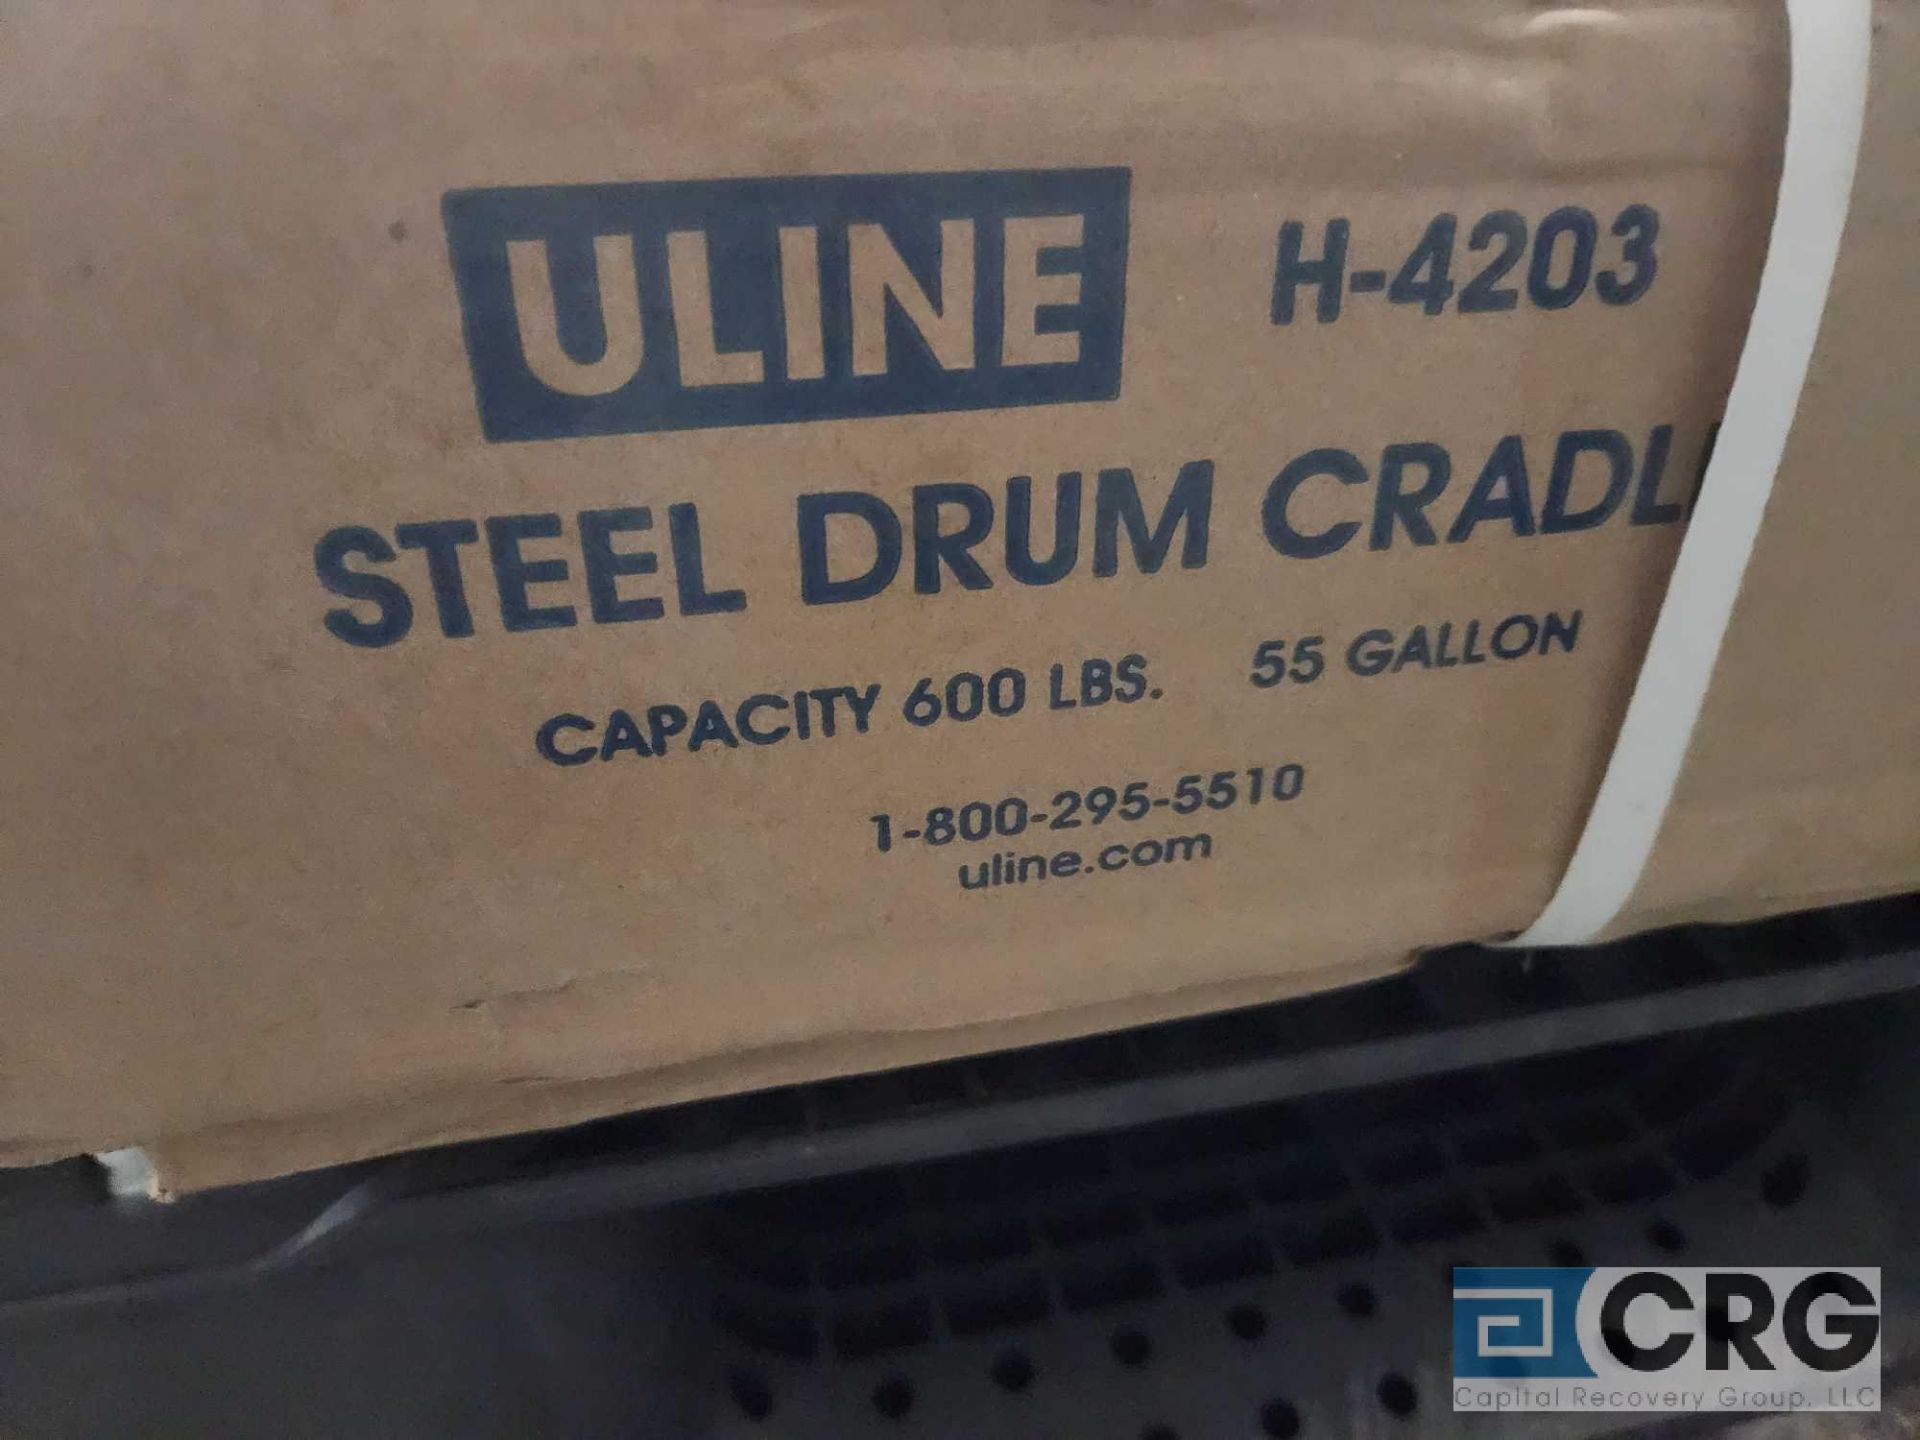 U-Line H-4203 Steel Drum Cradle